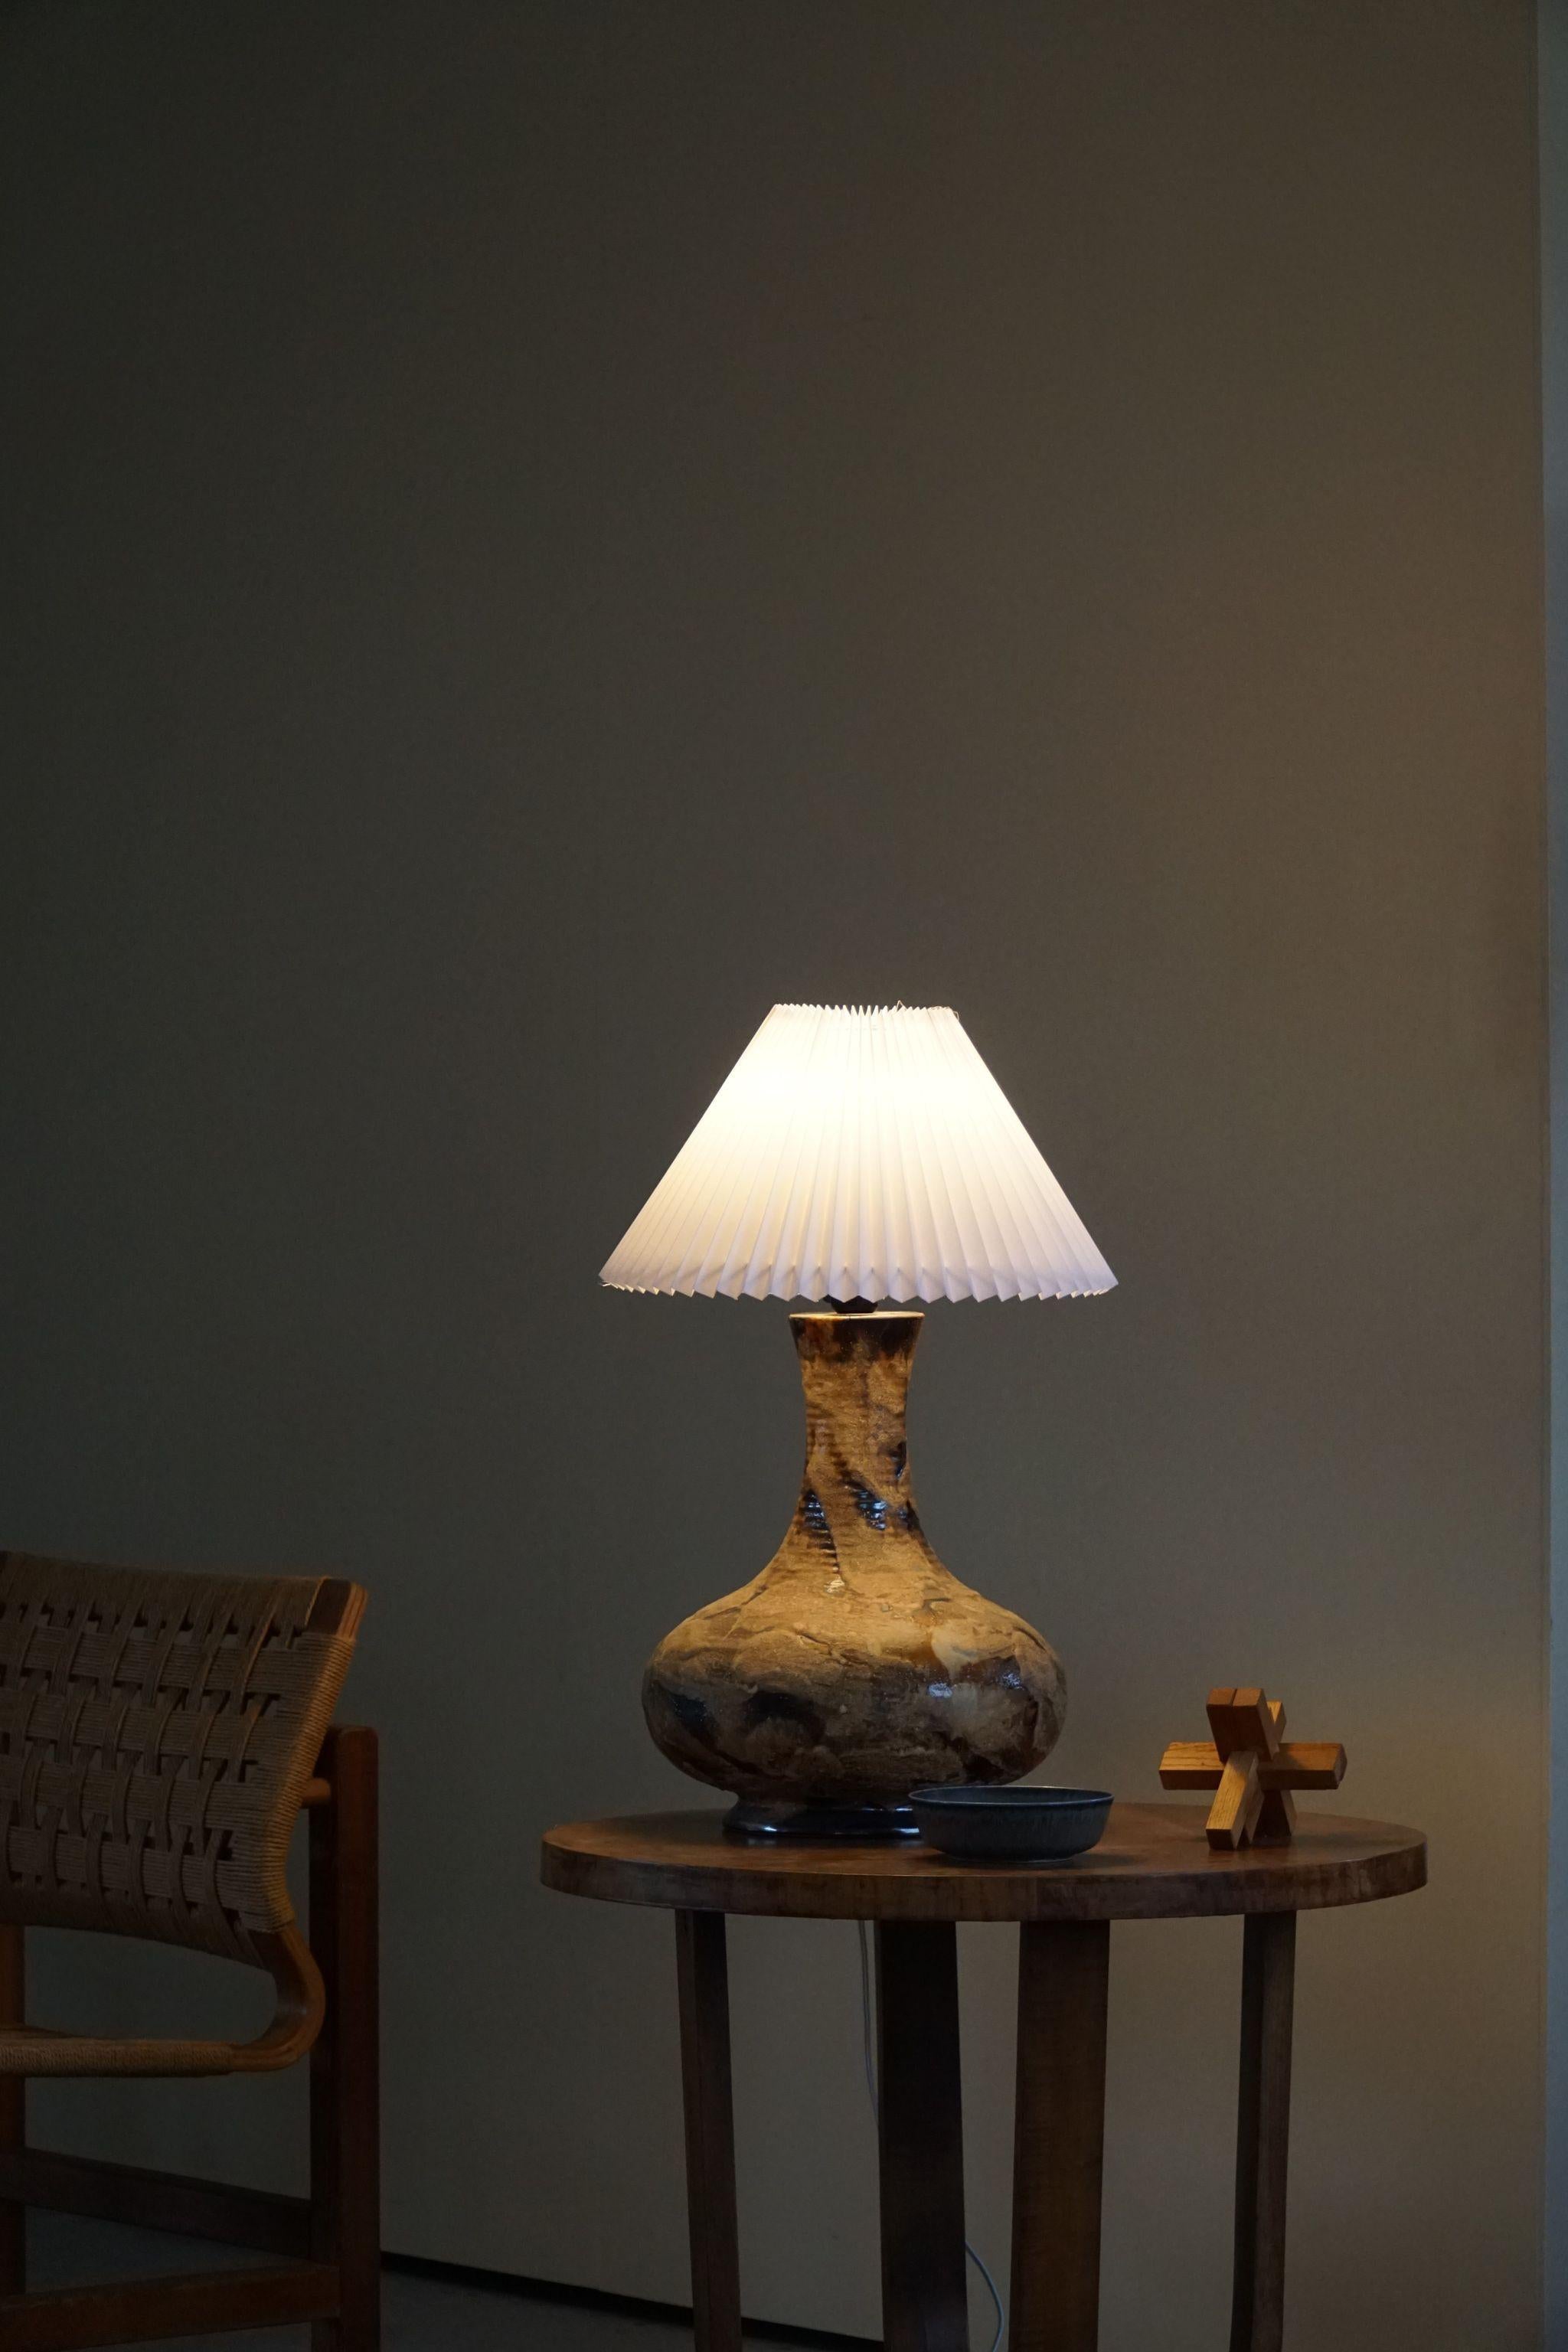 Une belle paire de grandes lampes de table danoises en céramique de différentes couleurs brunes. Fabriqué dans les années 1970. Cette magnifique paire vintage complètera de nombreux styles d'intérieur. Décoration intérieure moderne, scandinave,